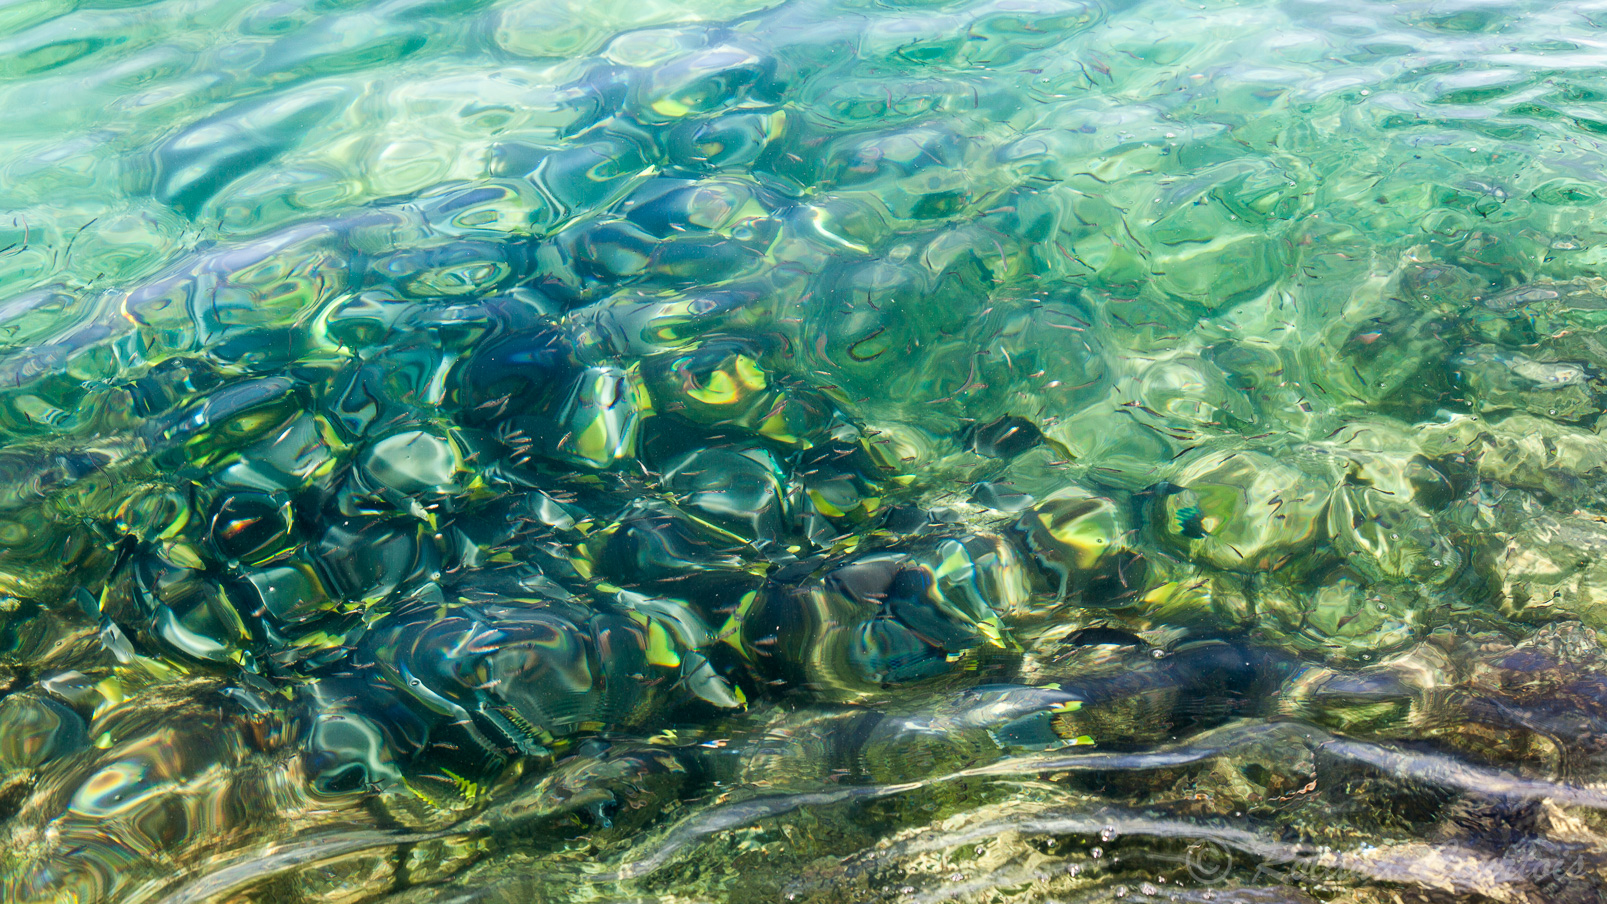 Banc de poissons dans l'eau claire